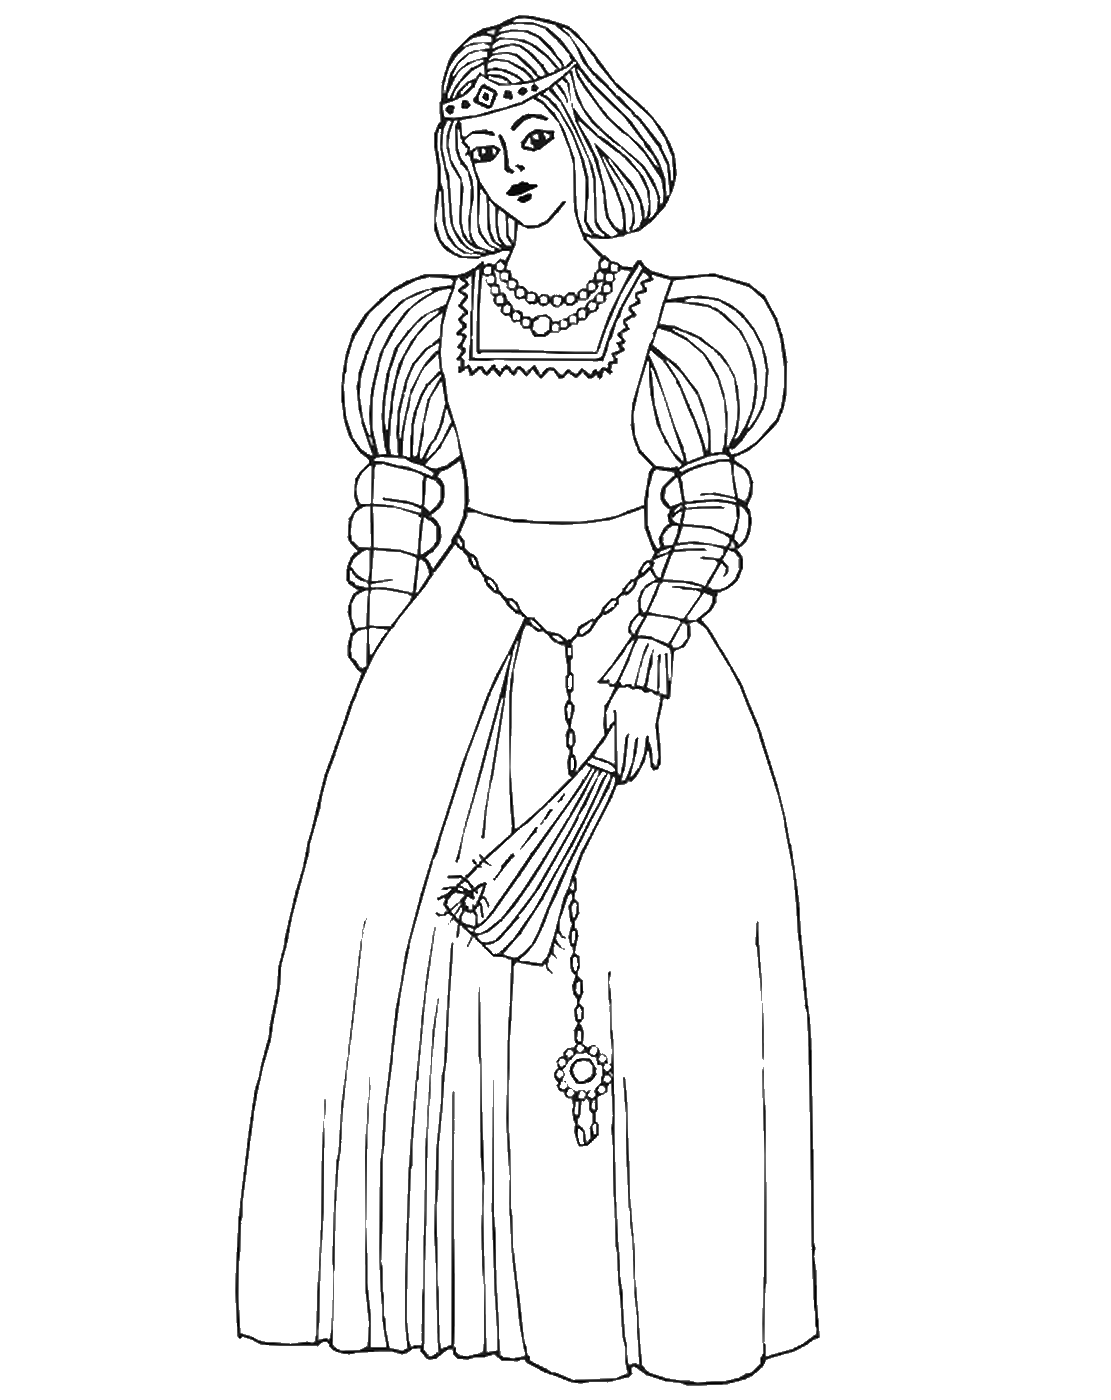 Одежда эпохи средневековья раскраска